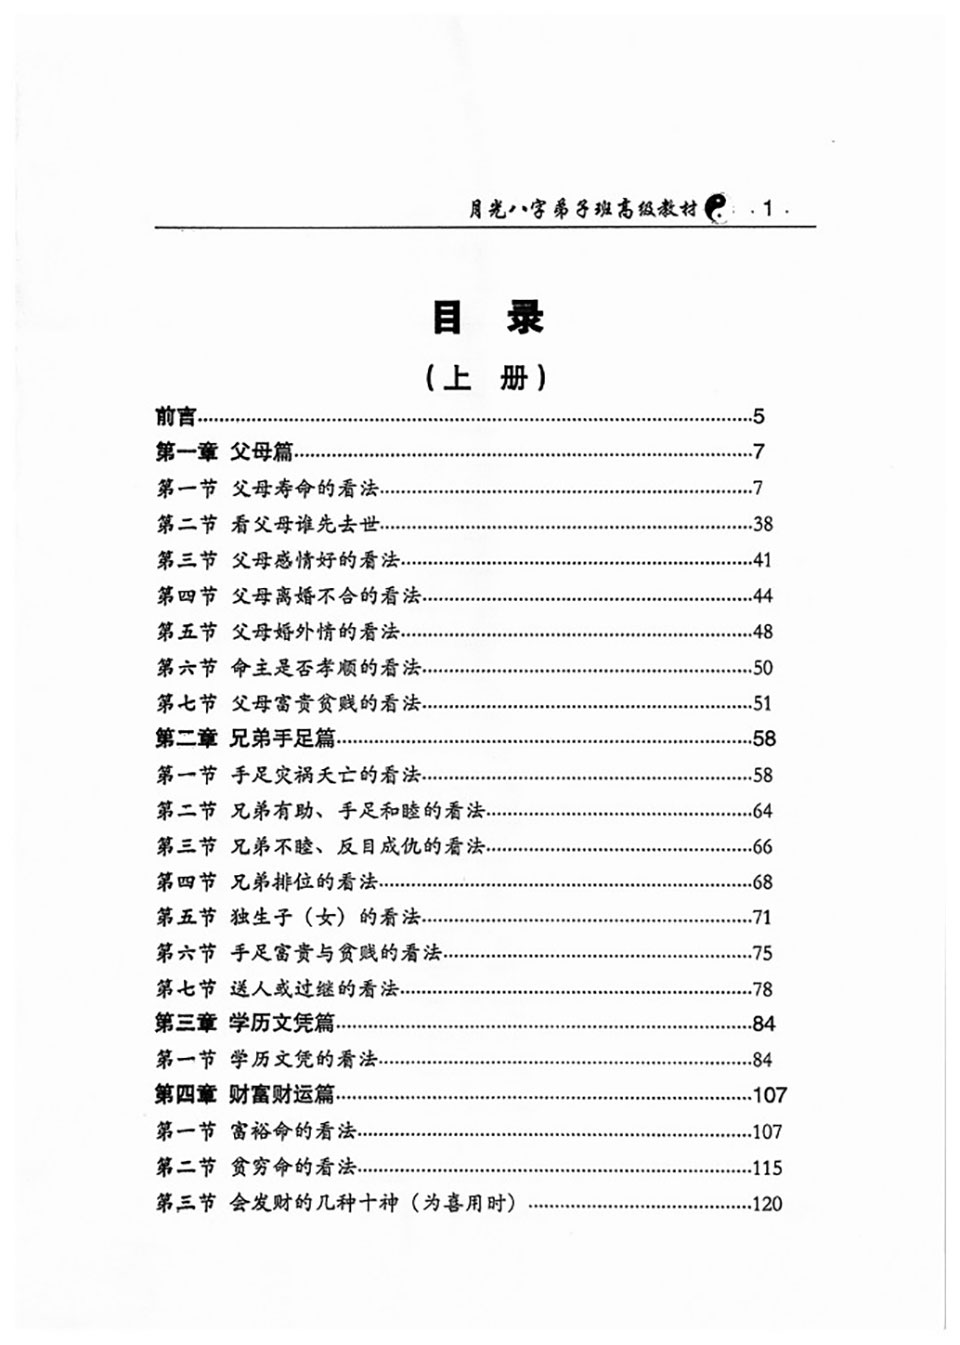 王君凌著《月光八字弟子班高级教材》上下册PDF